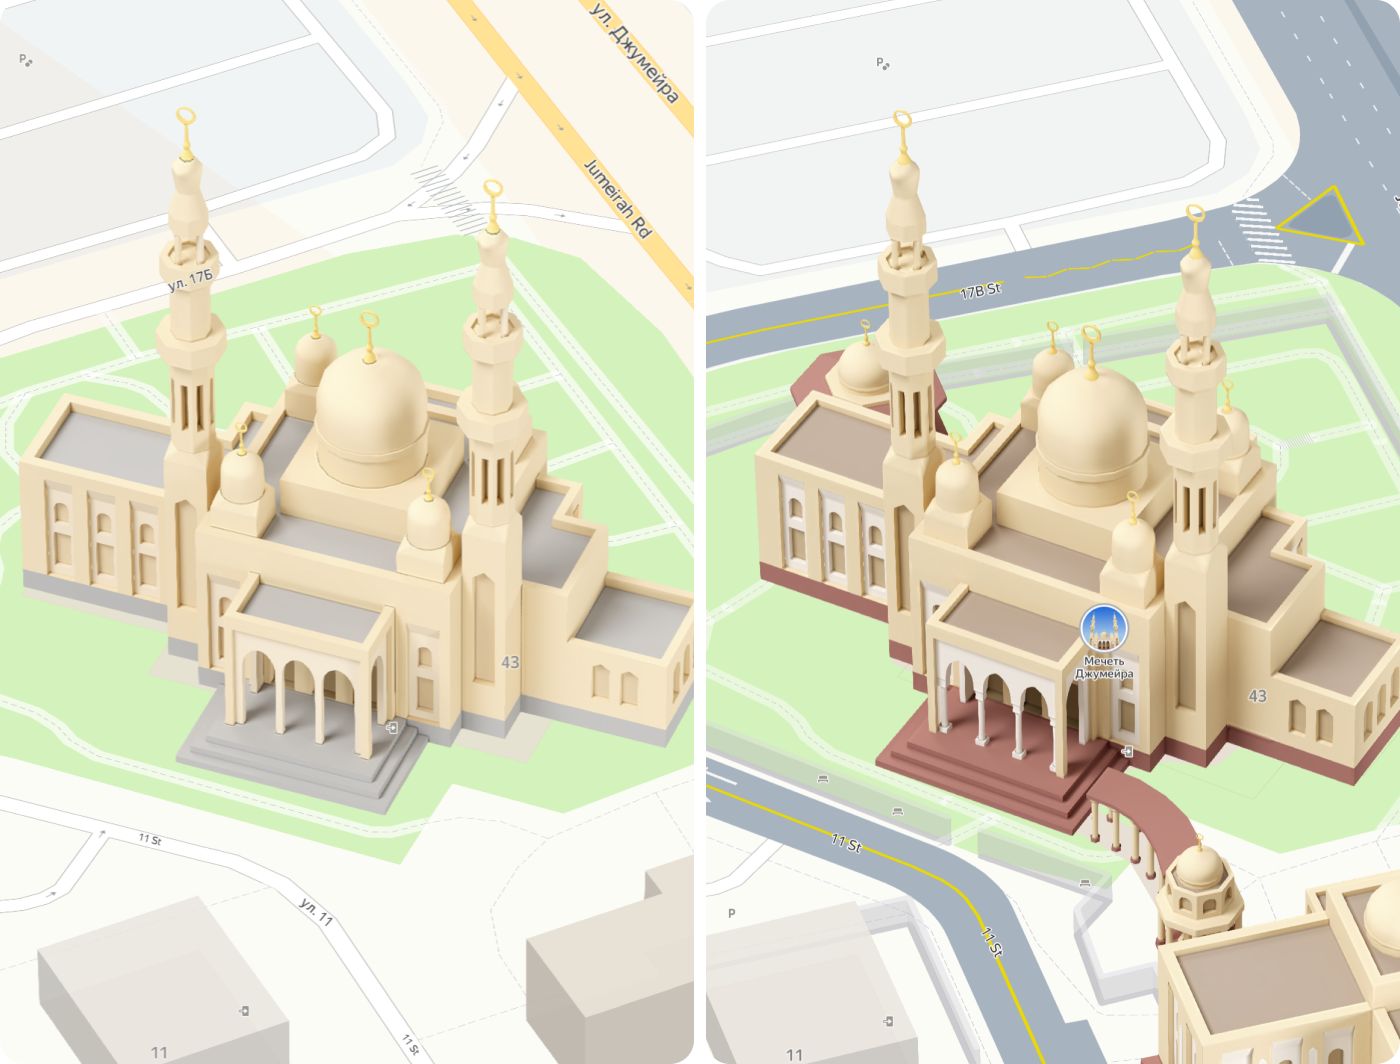 Слева: в модели отсутствует контрастность между фасадом, окнами, крышей и цоколем. Модель сложно считывать. Справа: пример модели с хорошей контрастностью